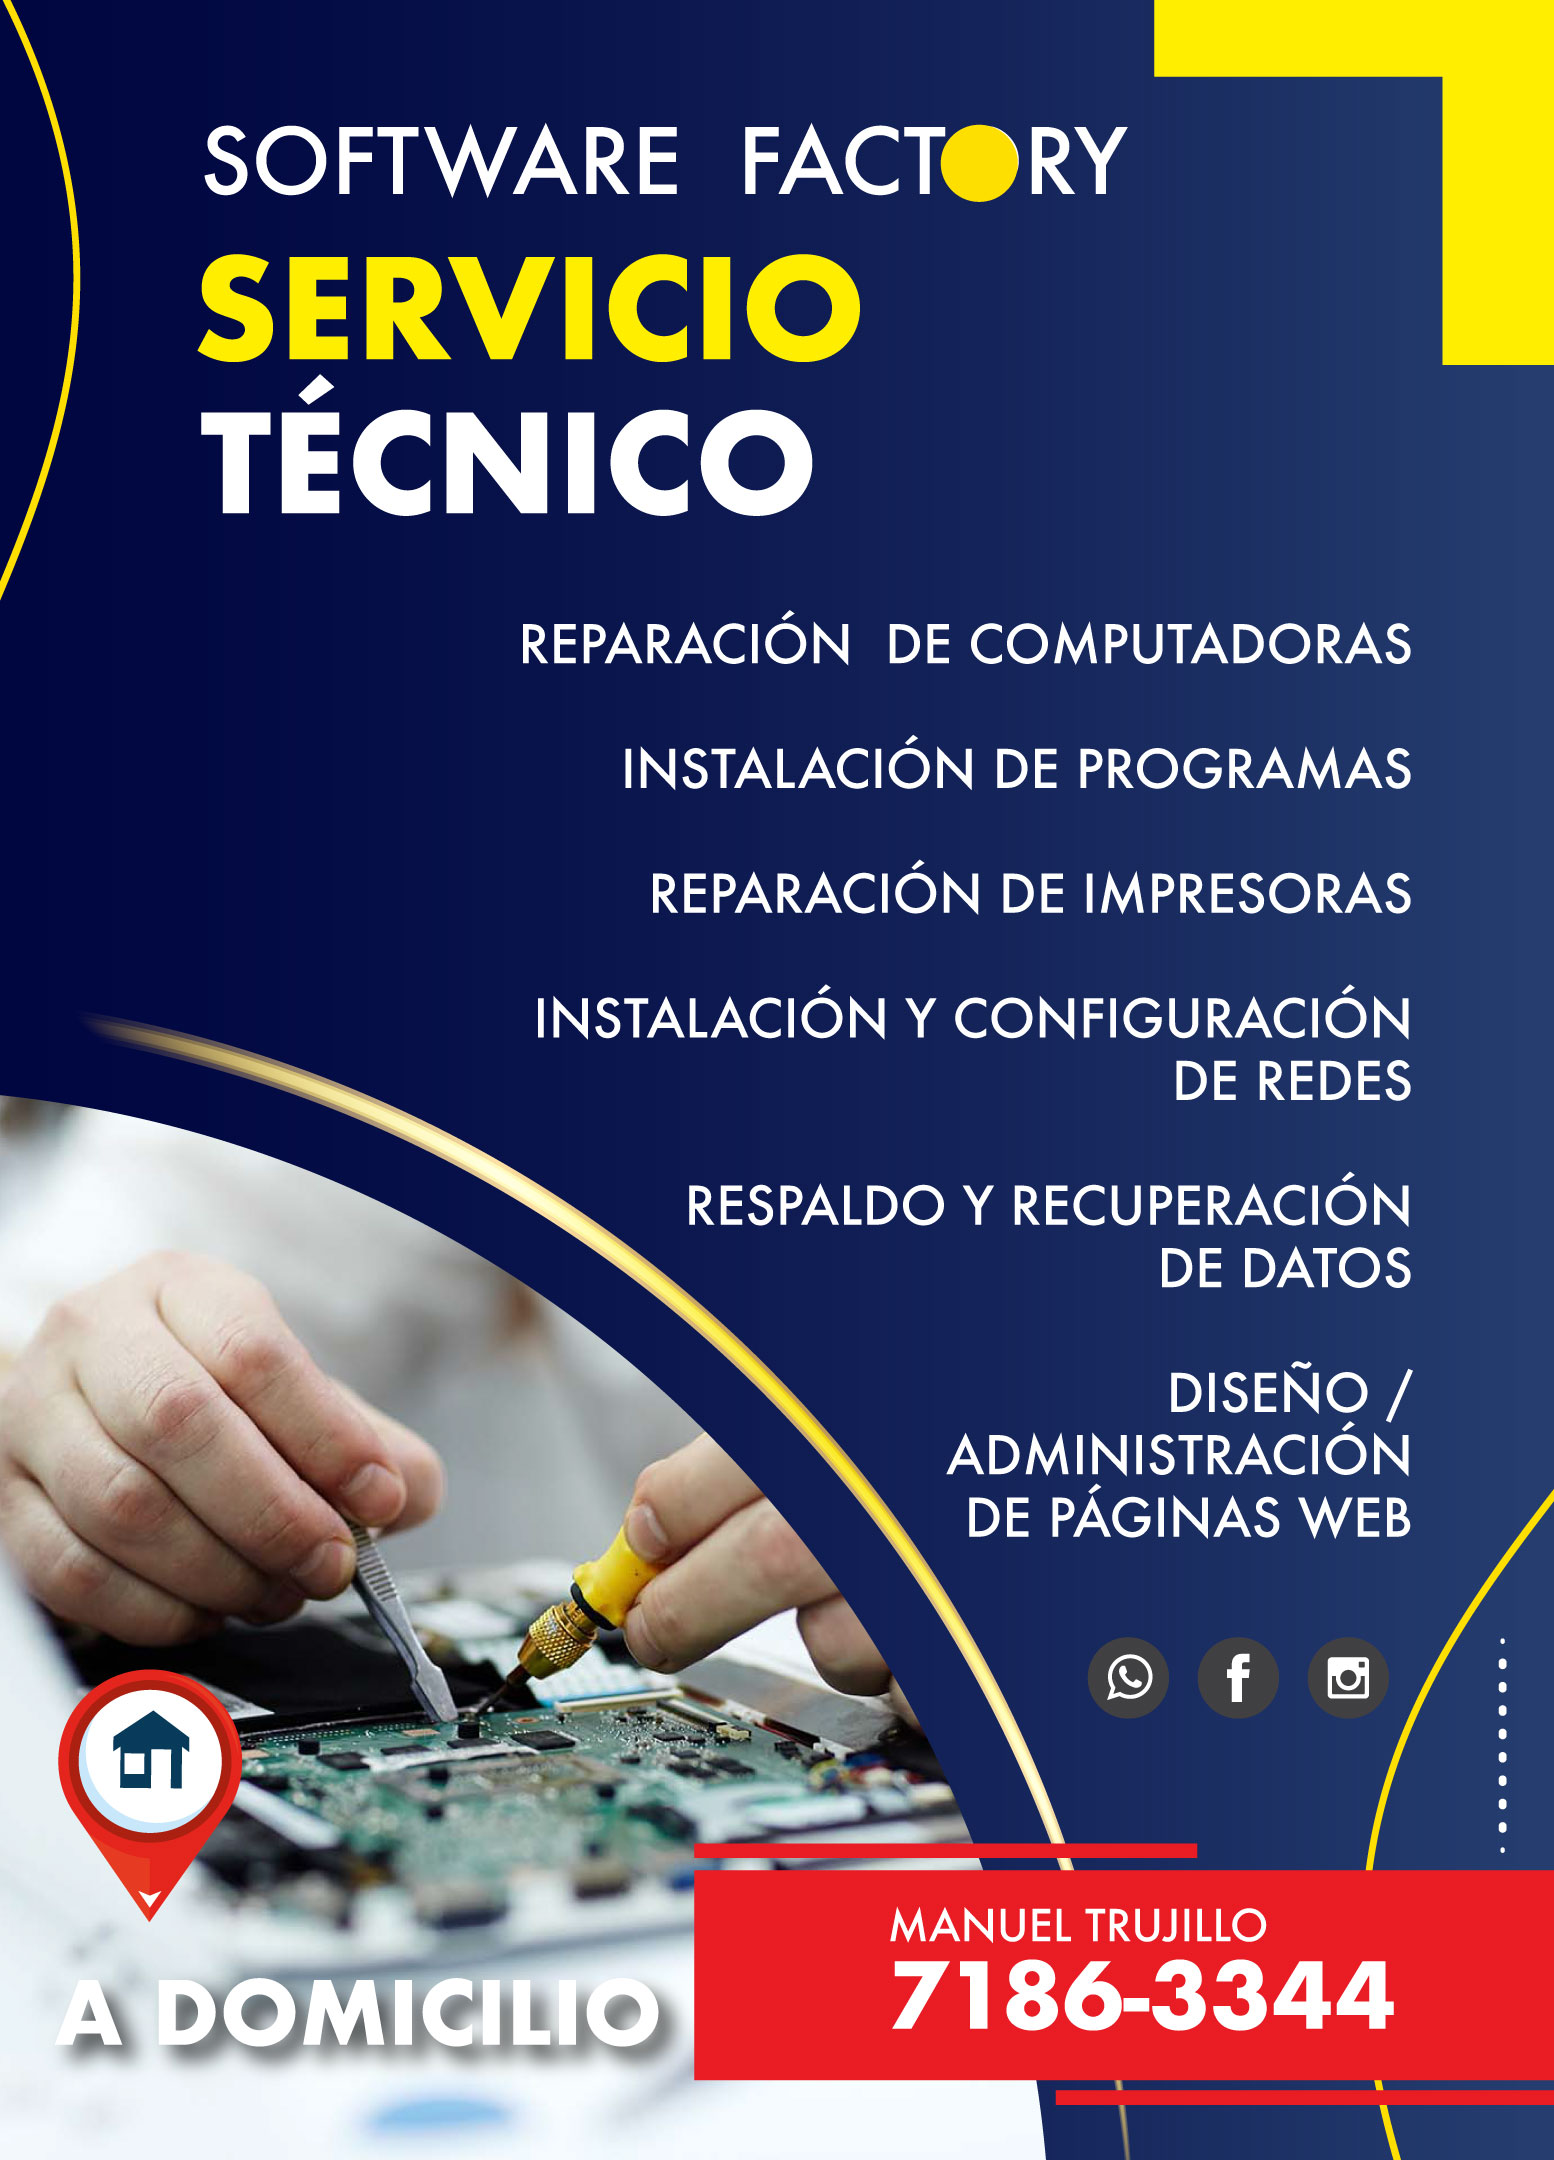 Talento Importado - Oficio Servicios - Software Factory